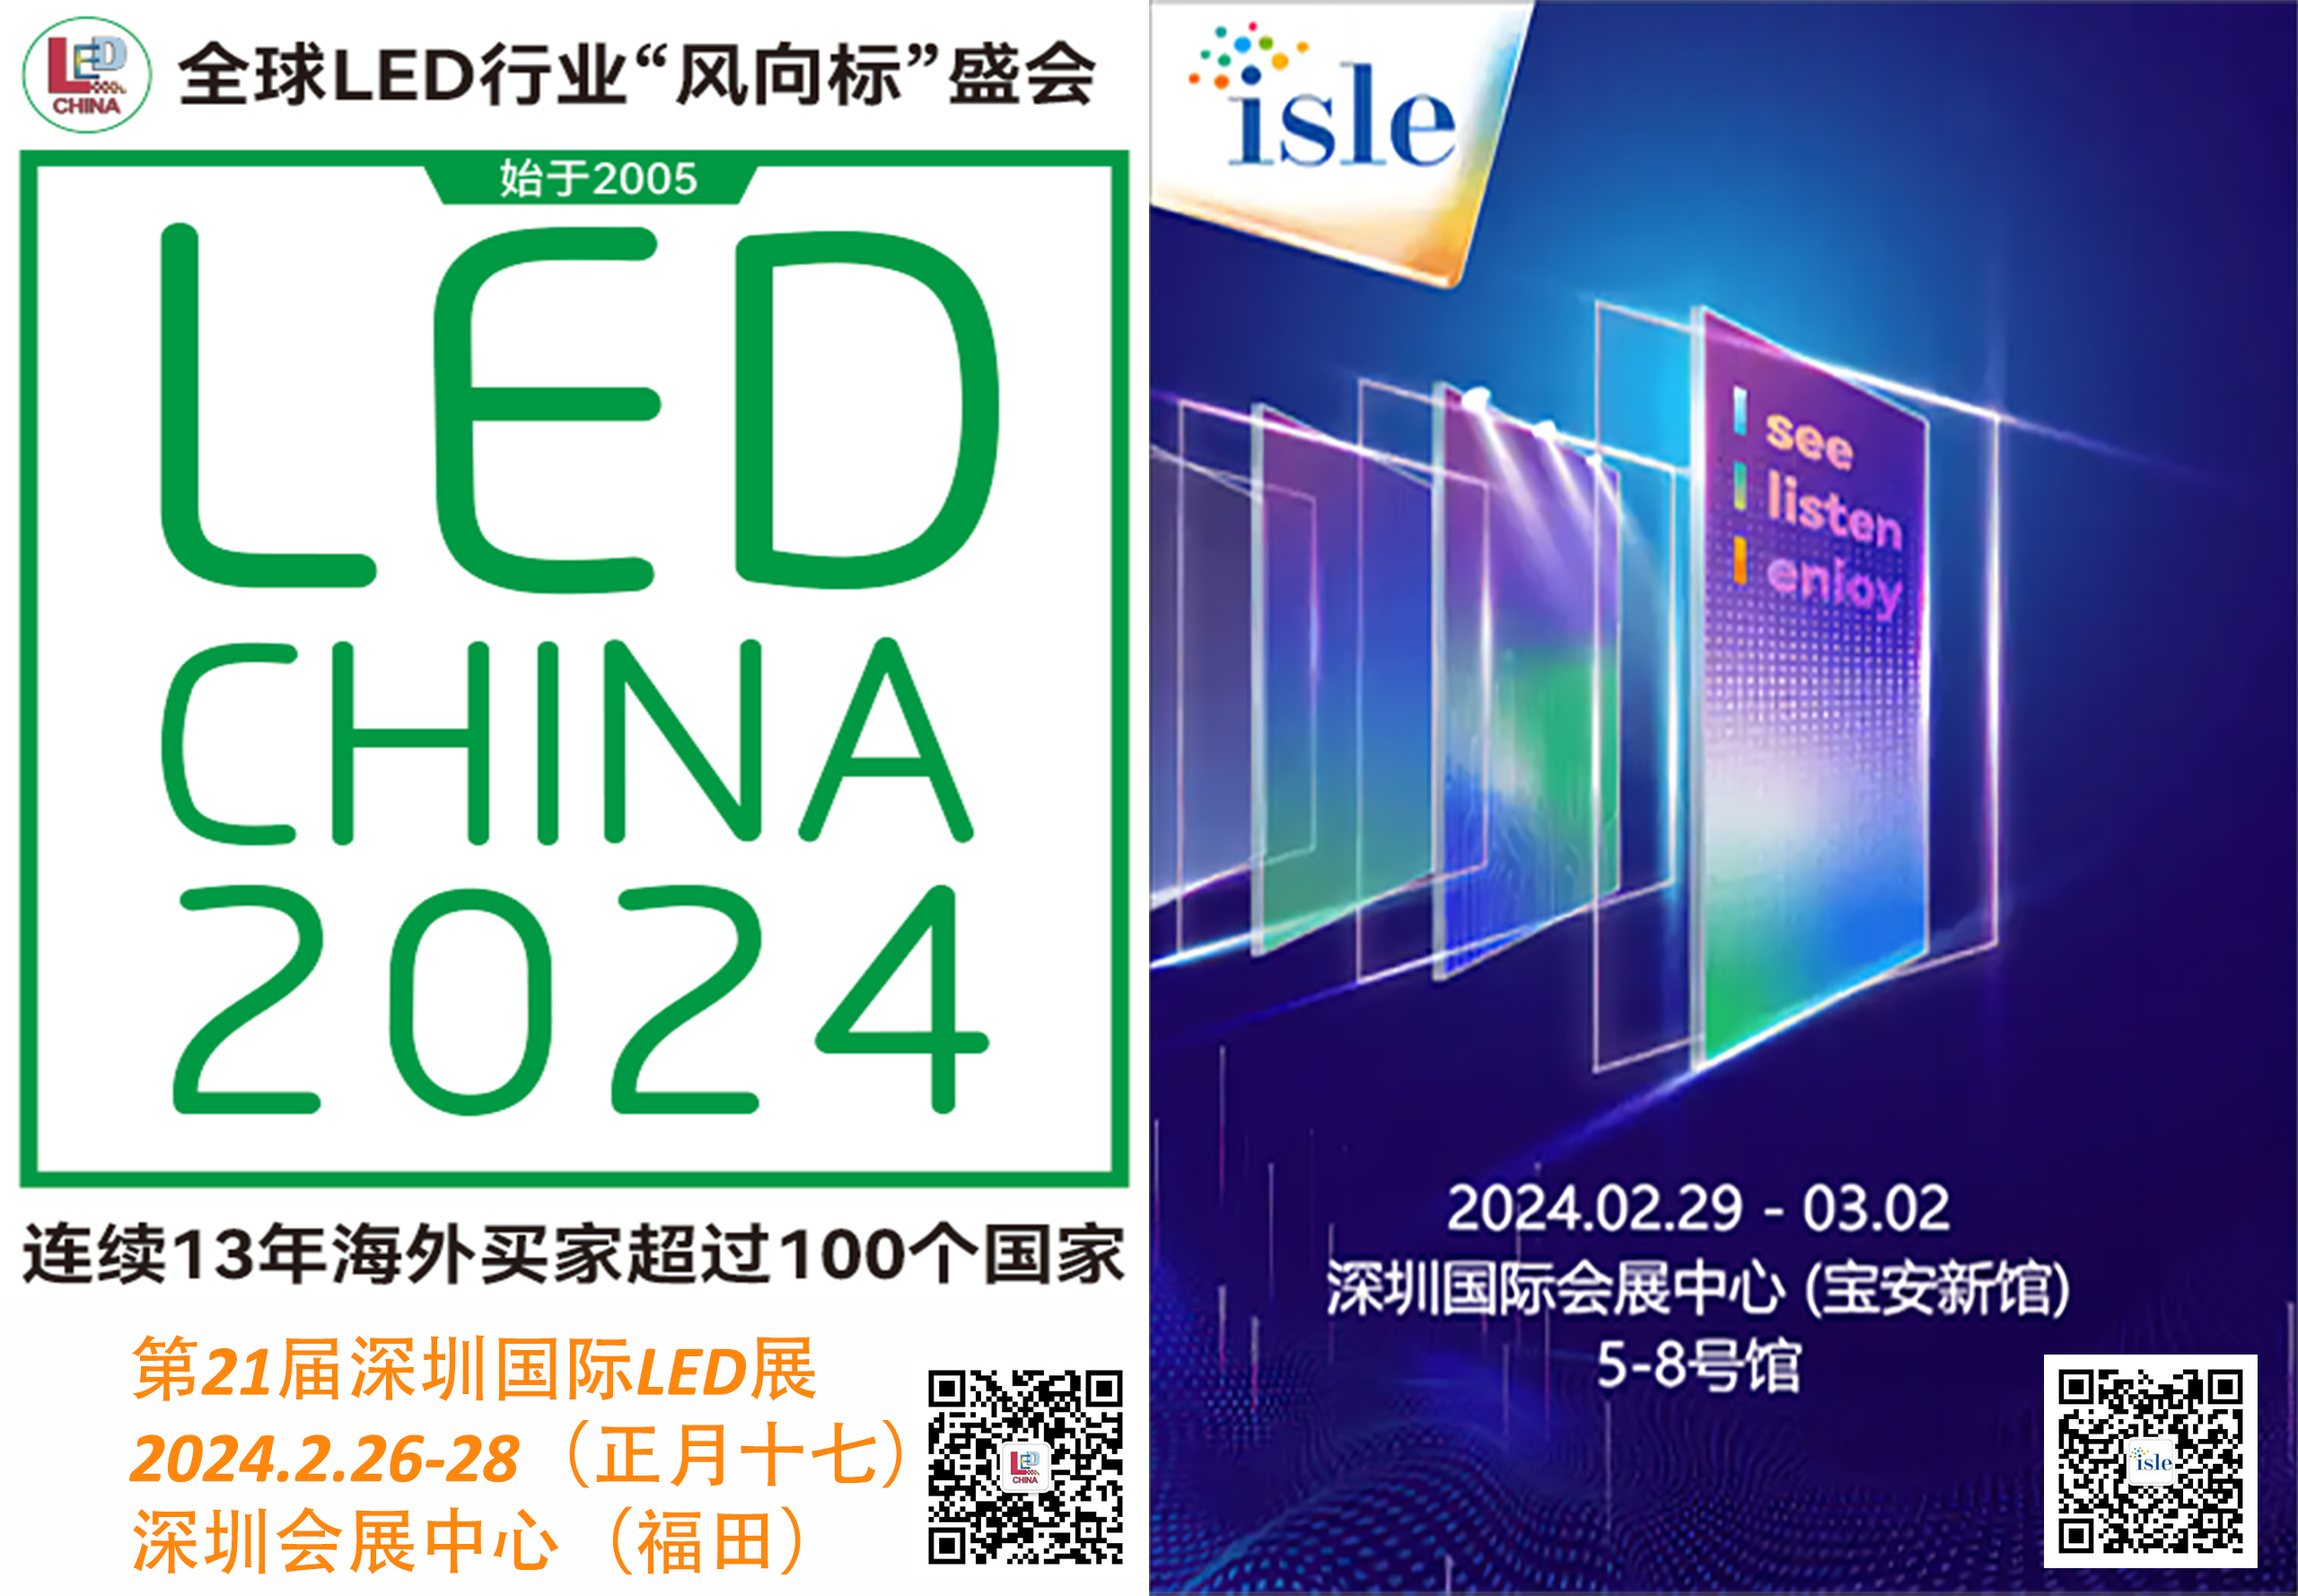 Große Woche nächste Woche in Shenzhen für die LED-Digitalbeschilderungsbranche!